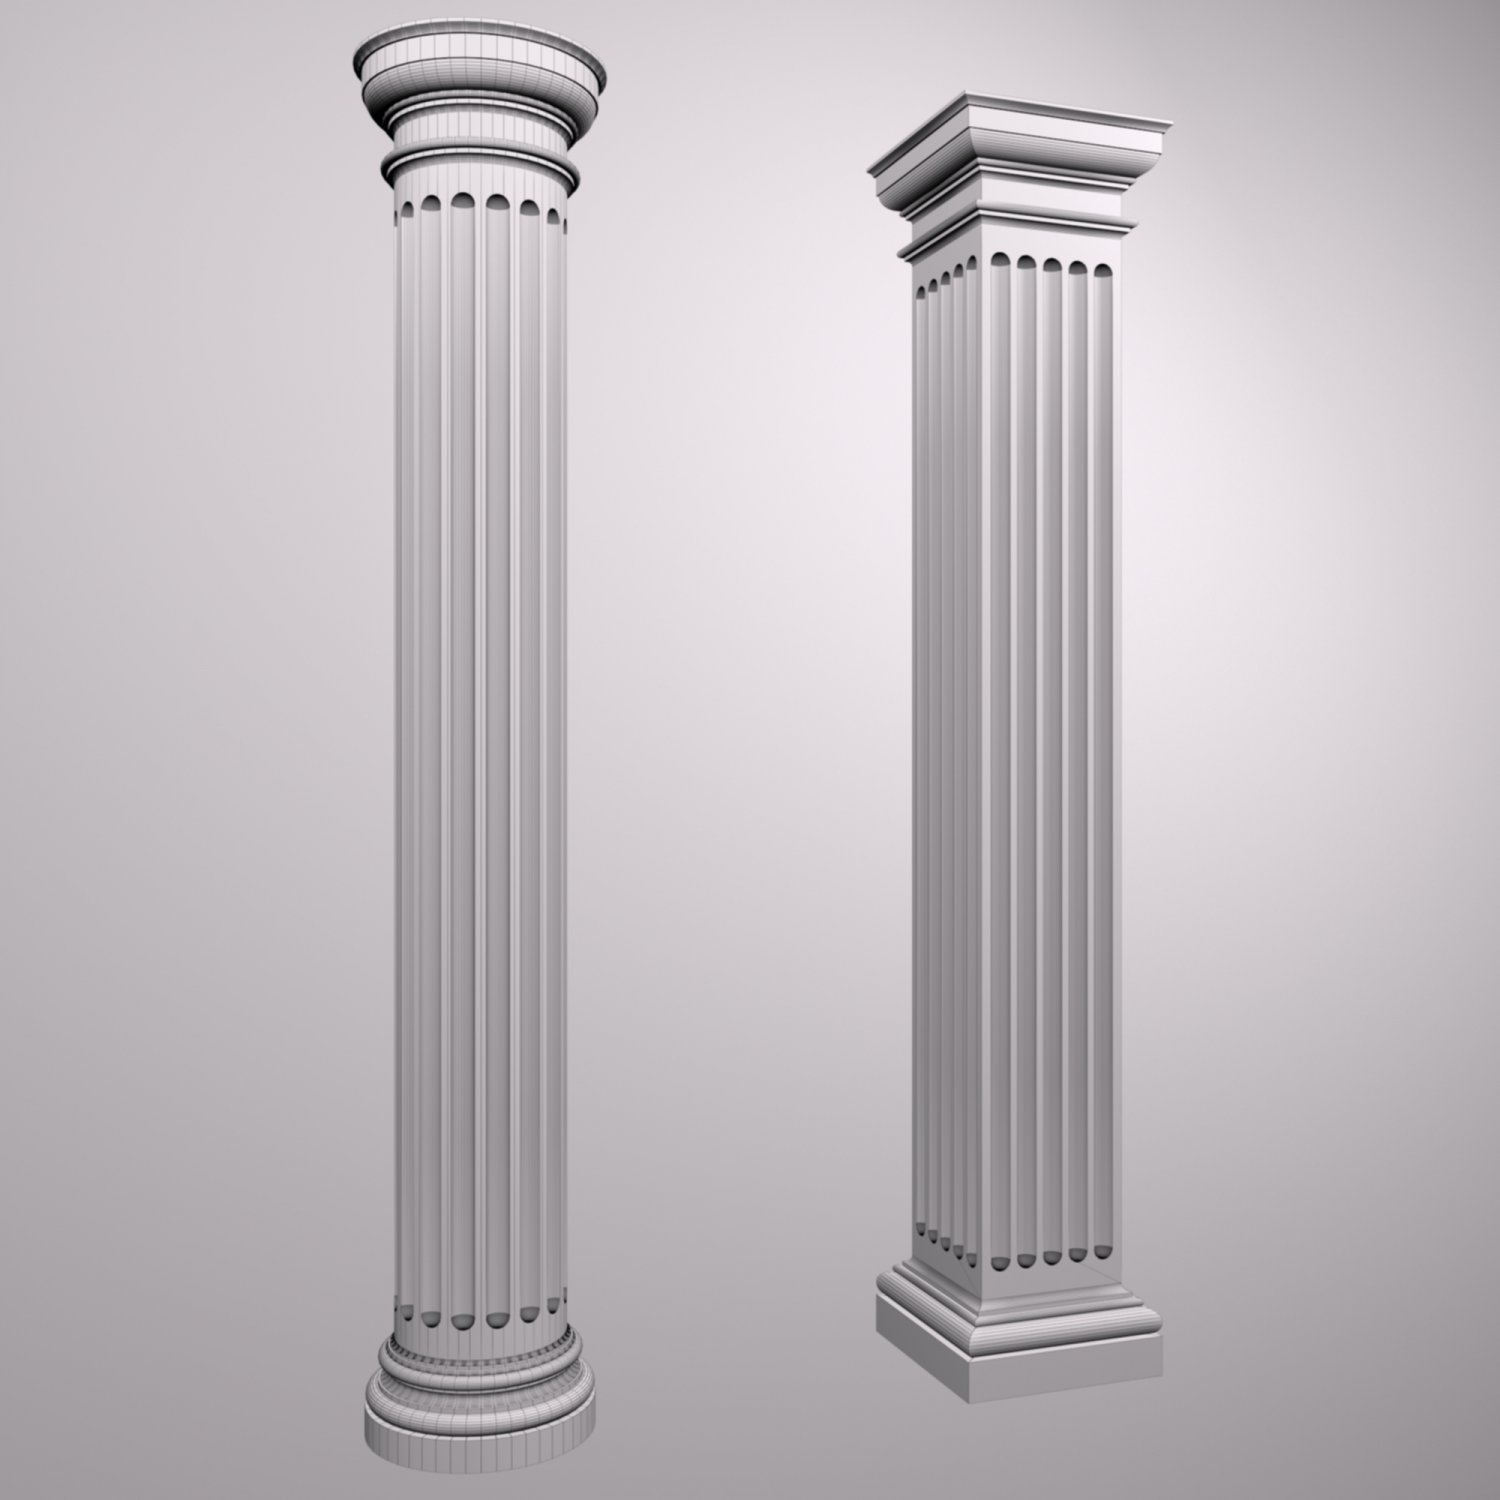 Three column. Полуколонна l9328 (Капитель). Пилястра колонна Бергонцо. Капитель колонны пилястра. Сечение колонны с каннелюрами.